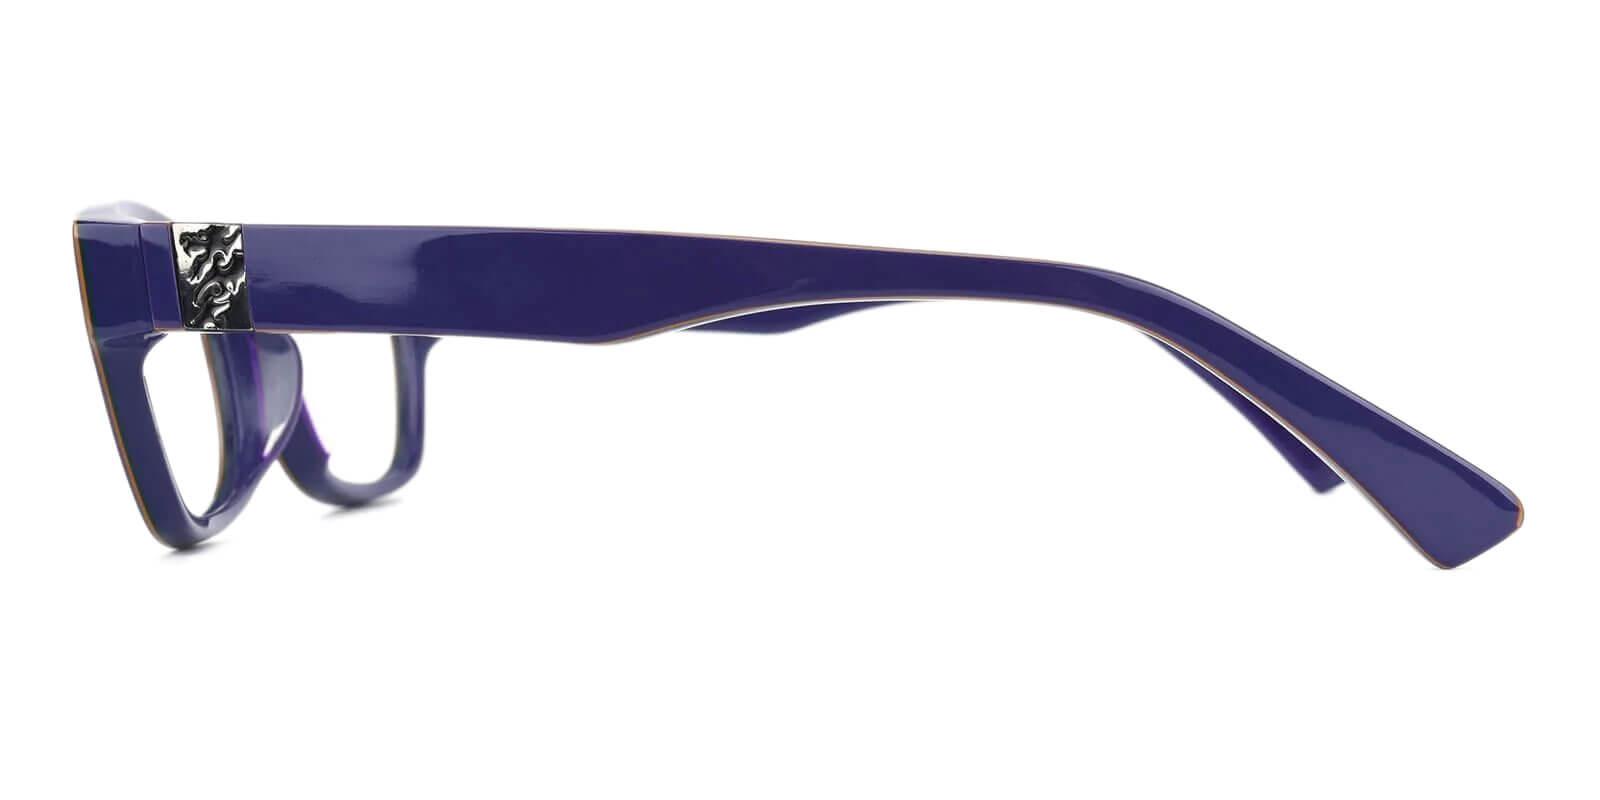 Giroux Purple TR Eyeglasses , UniversalBridgeFit Frames from ABBE Glasses